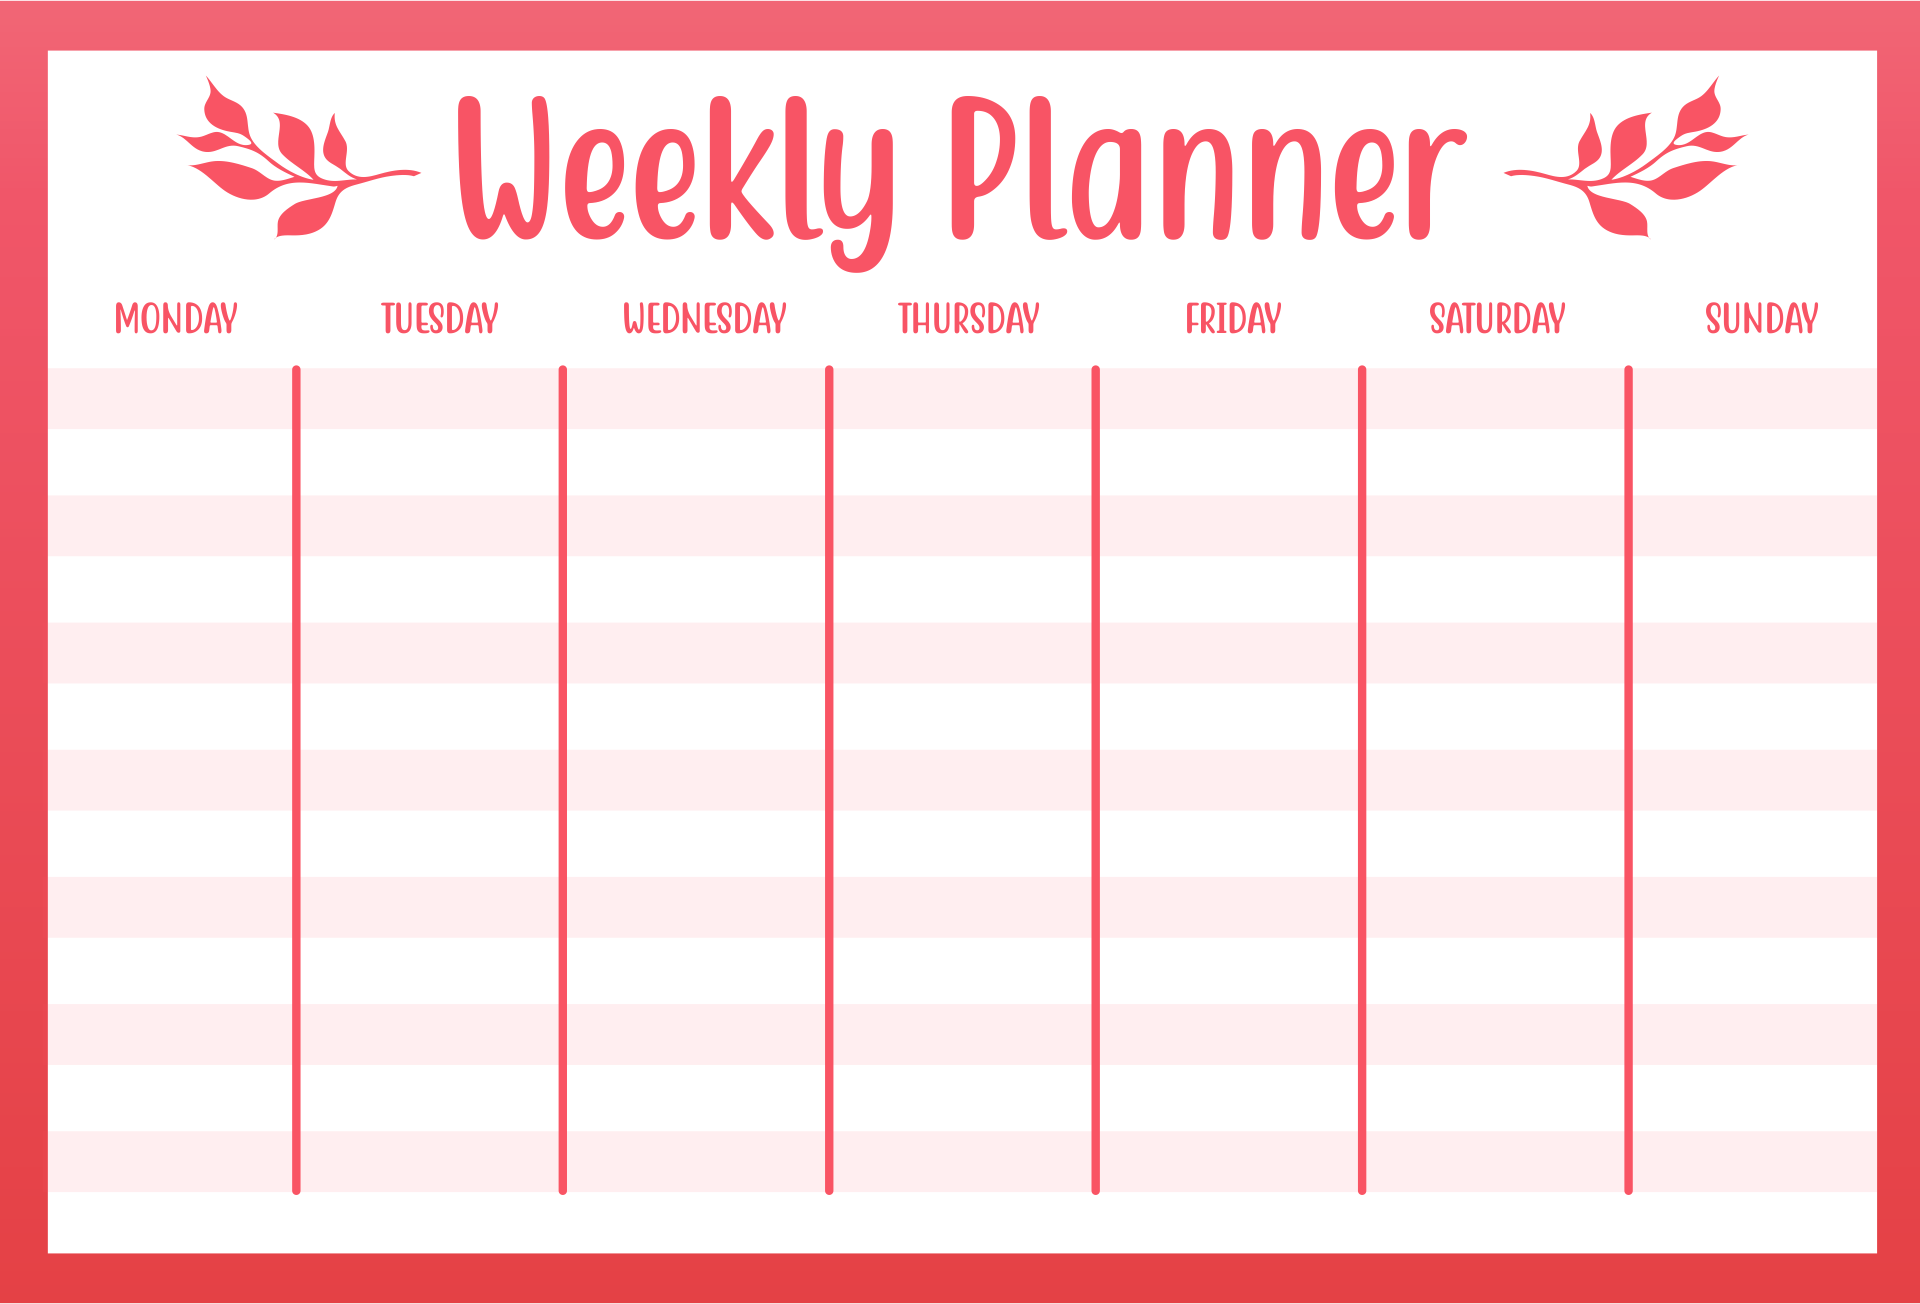 free-weekly-planner-free-printable-weekly-calendar-weekly-planner-free-weekly-planner-template